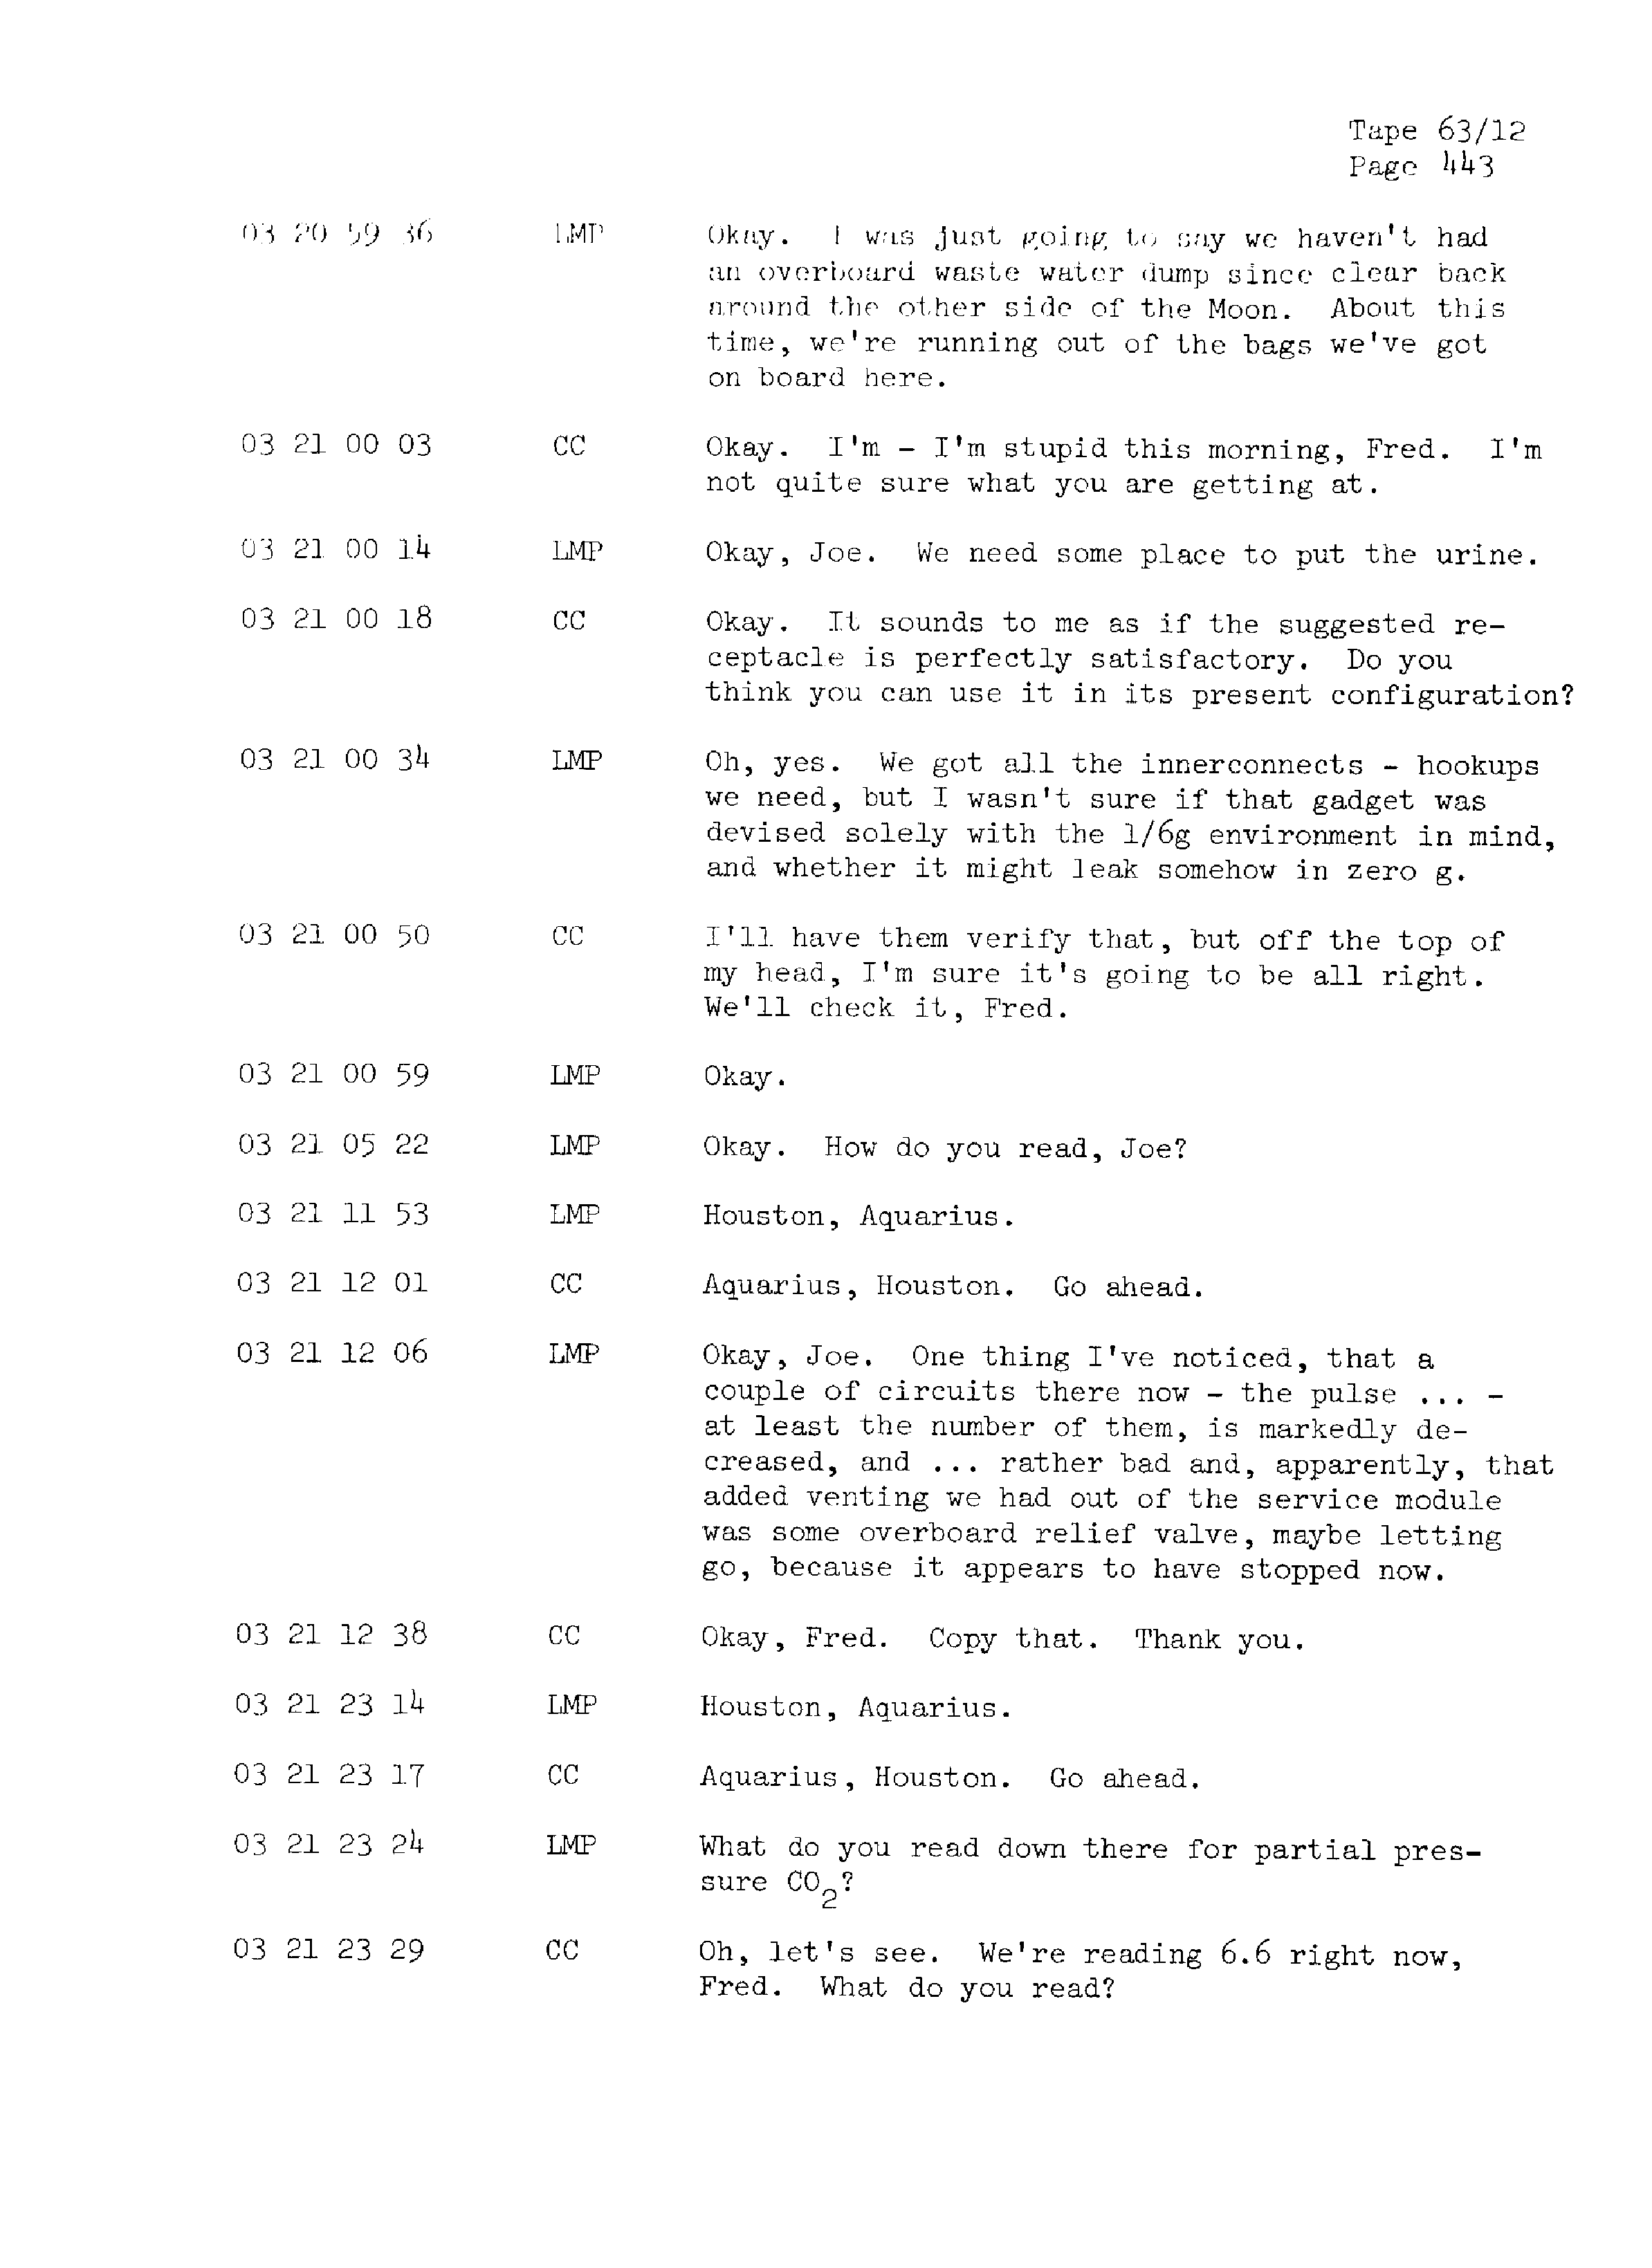 Page 450 of Apollo 13’s original transcript